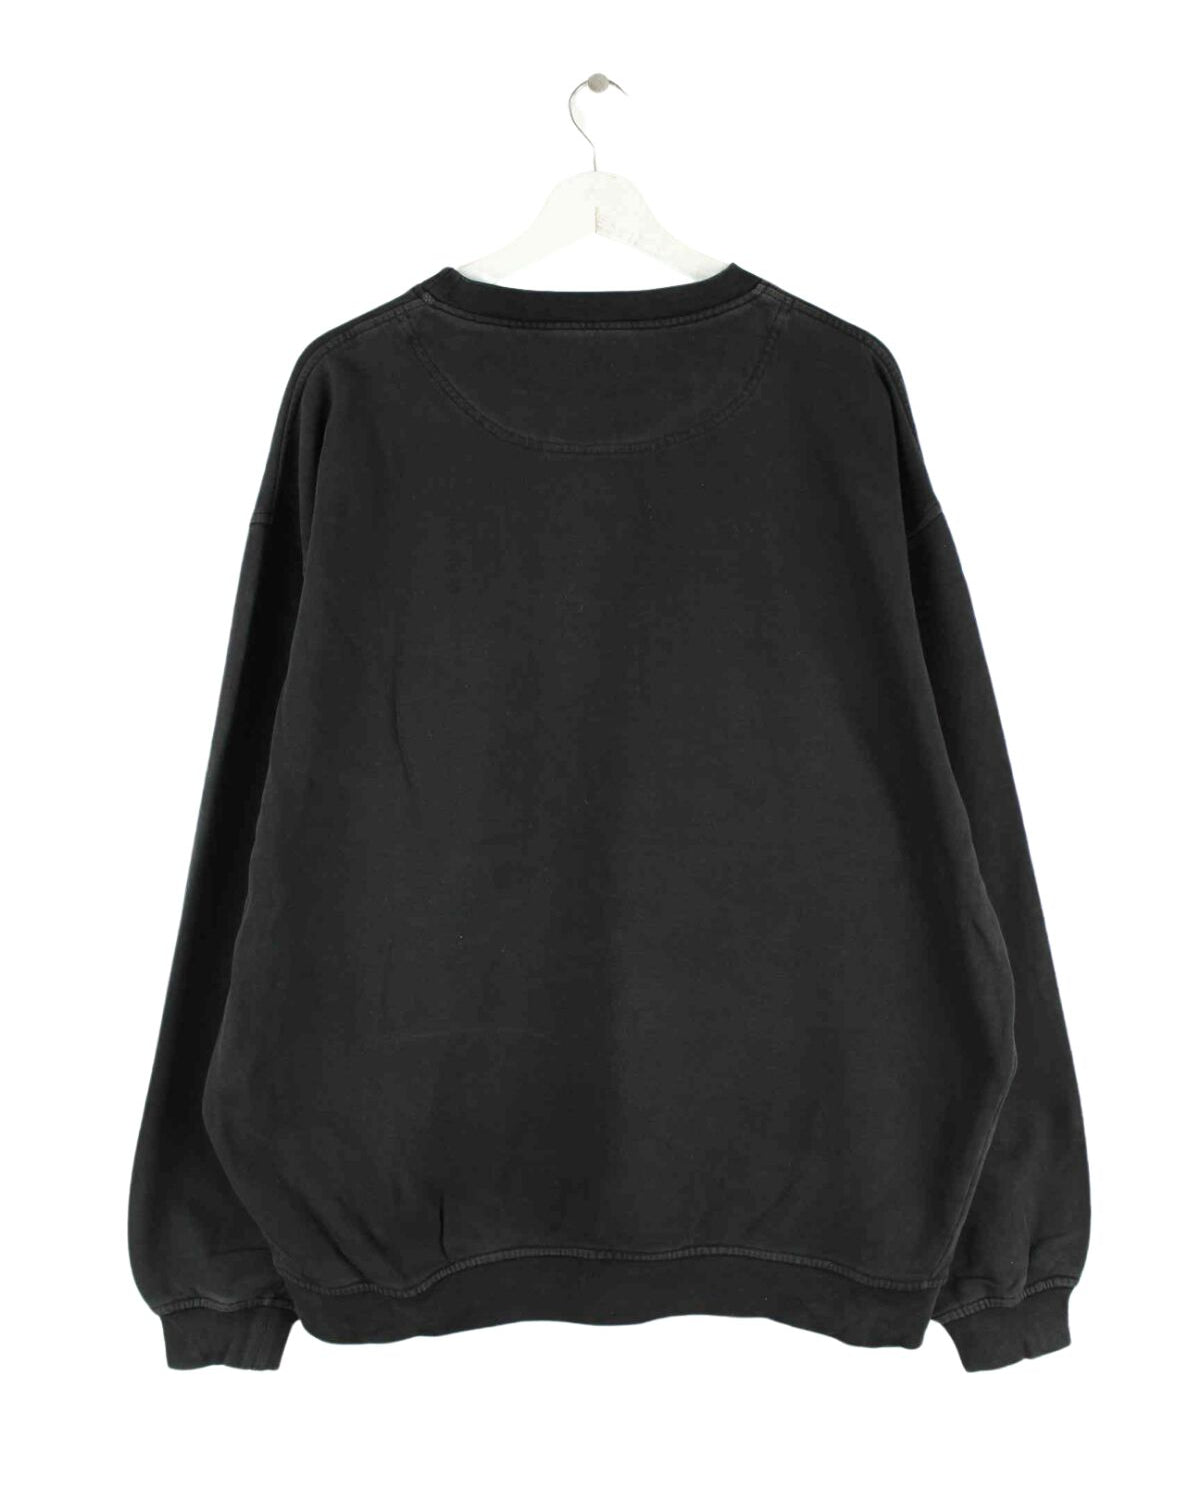 Hugo Boss Basic Sweater Schwarz XL (back image)